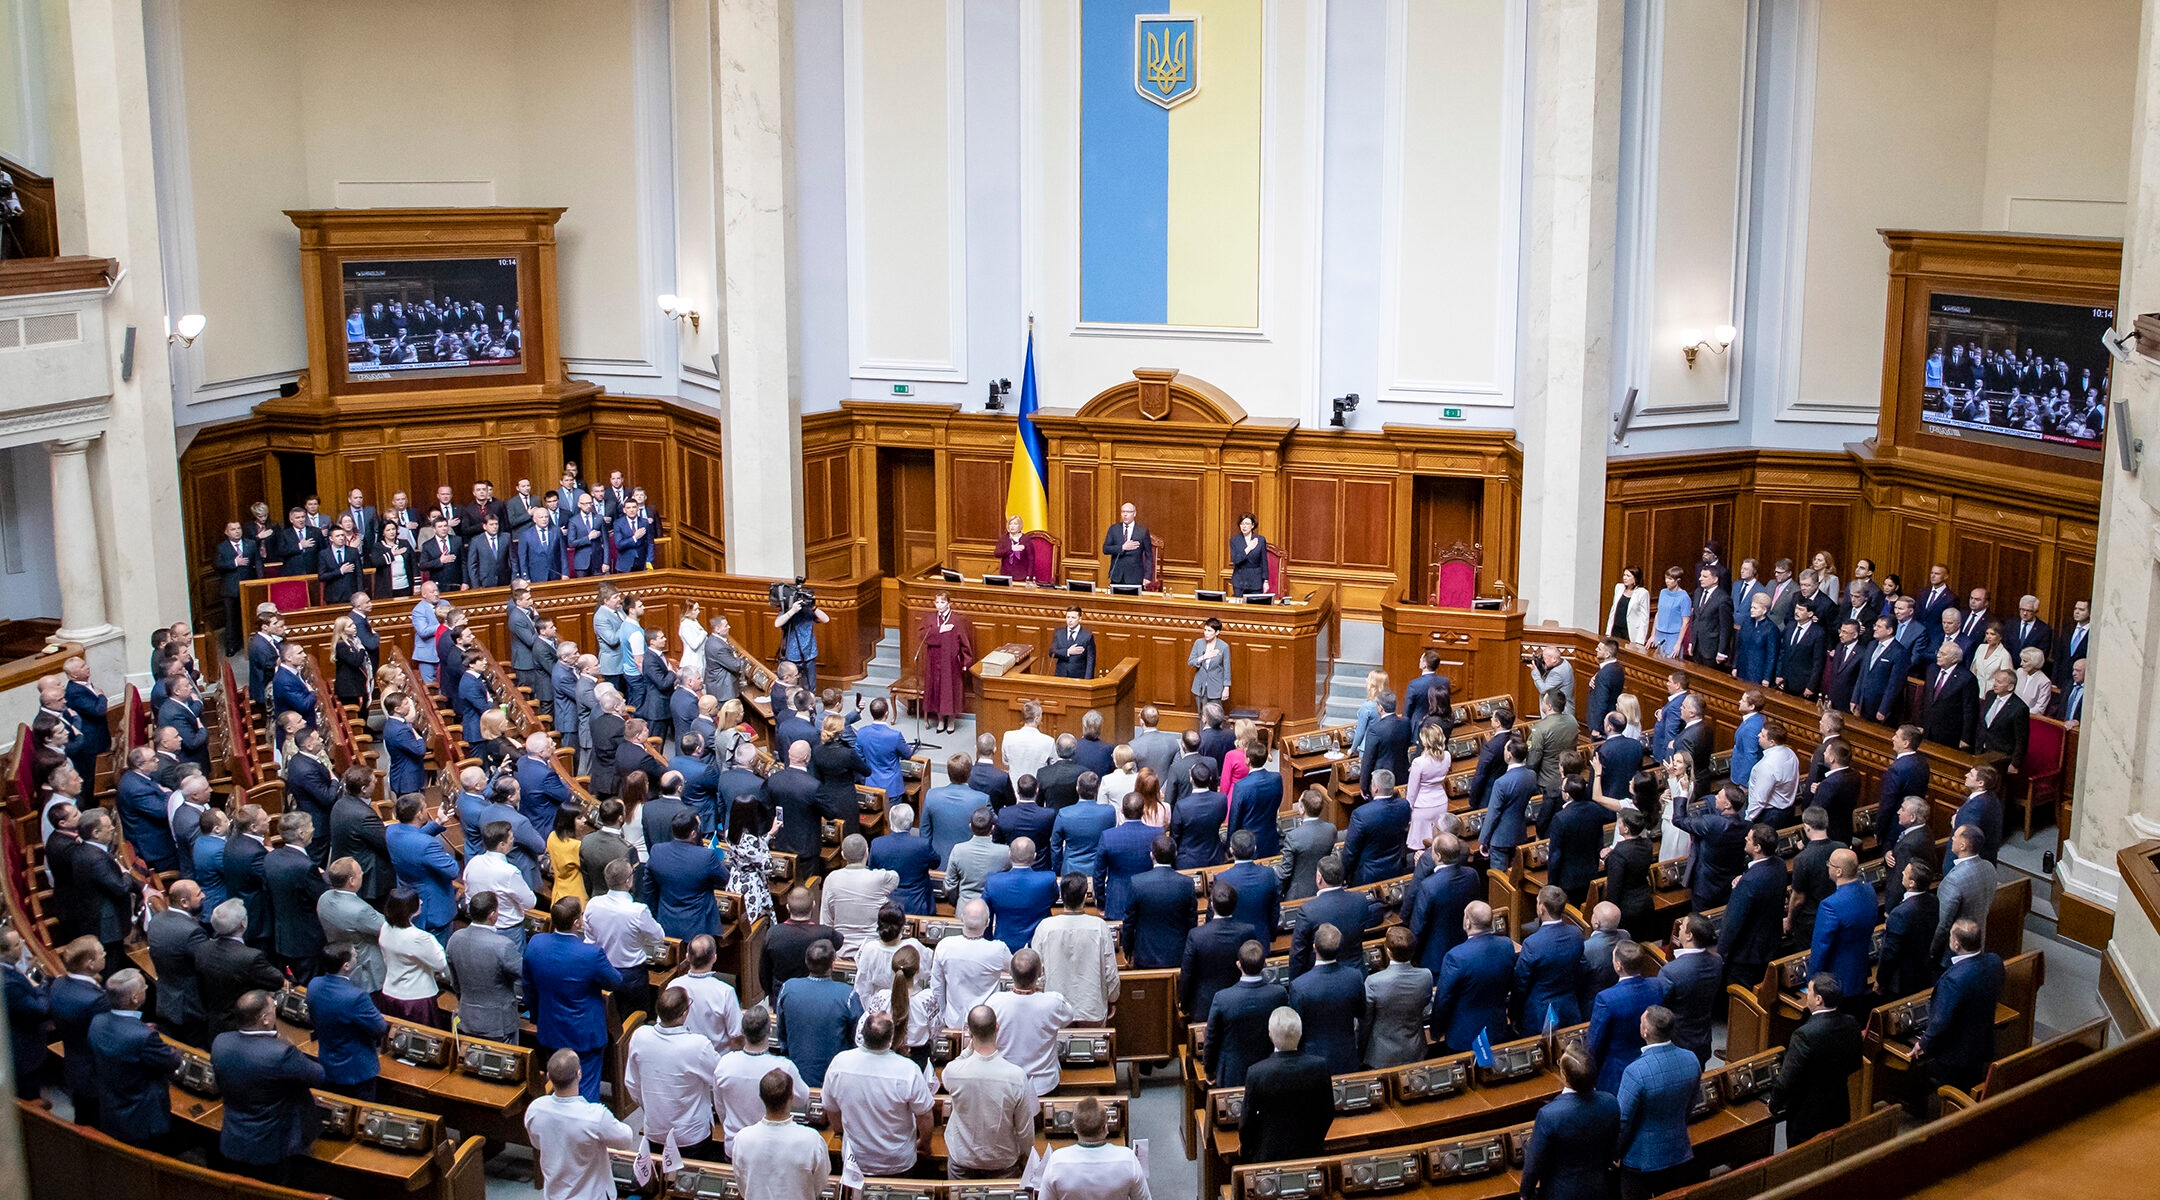 President Volodymyr Zelensky addresses parliament in Kyiv, Ukraine on May 20, 2019. (U.S. Embassy Kyiv, Ukraine / Flickr)